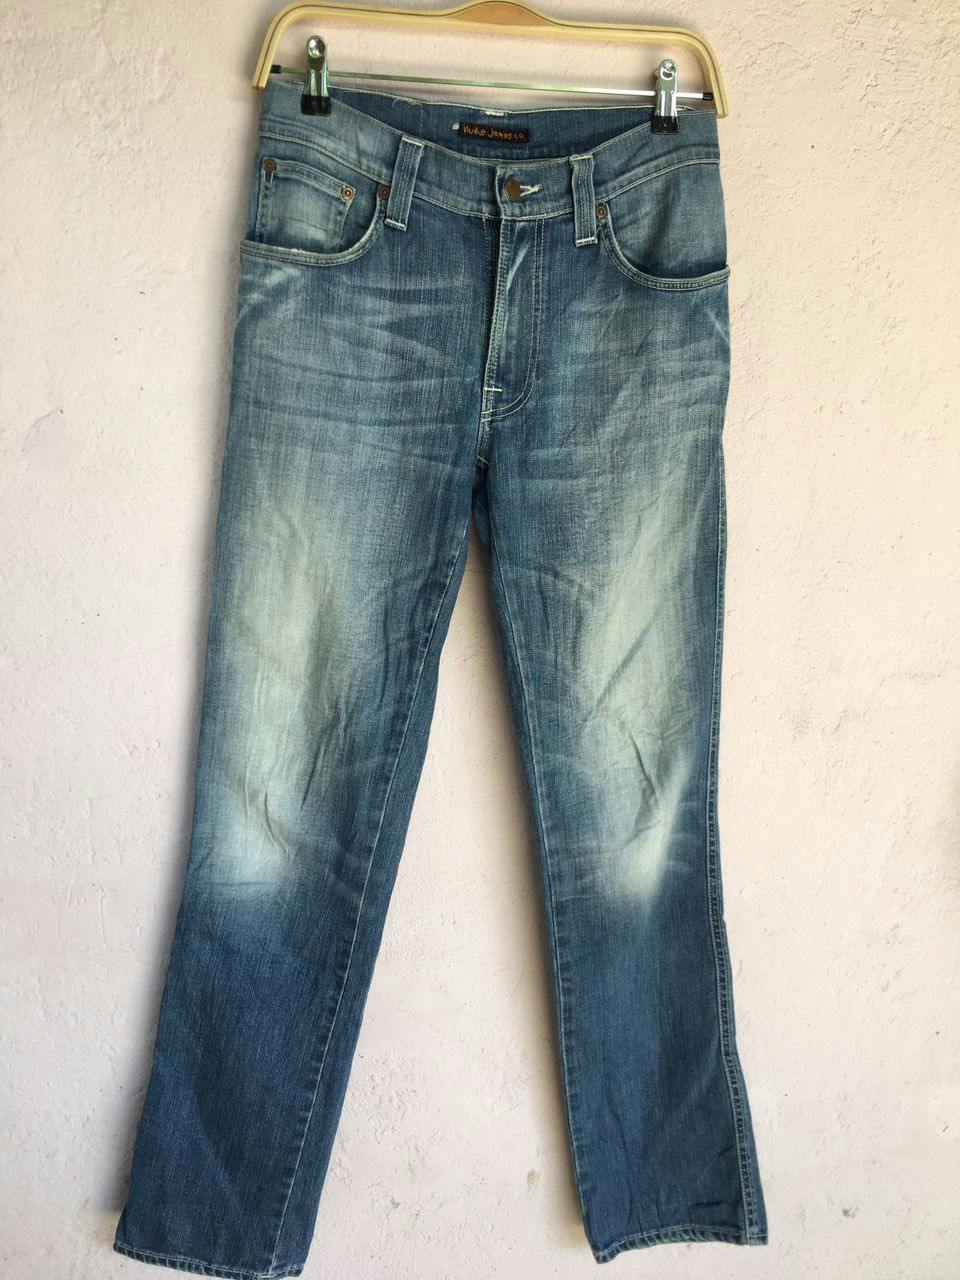 Nudie jeans.co Denim Slim jeans Men’s Pants made in Italy - 3